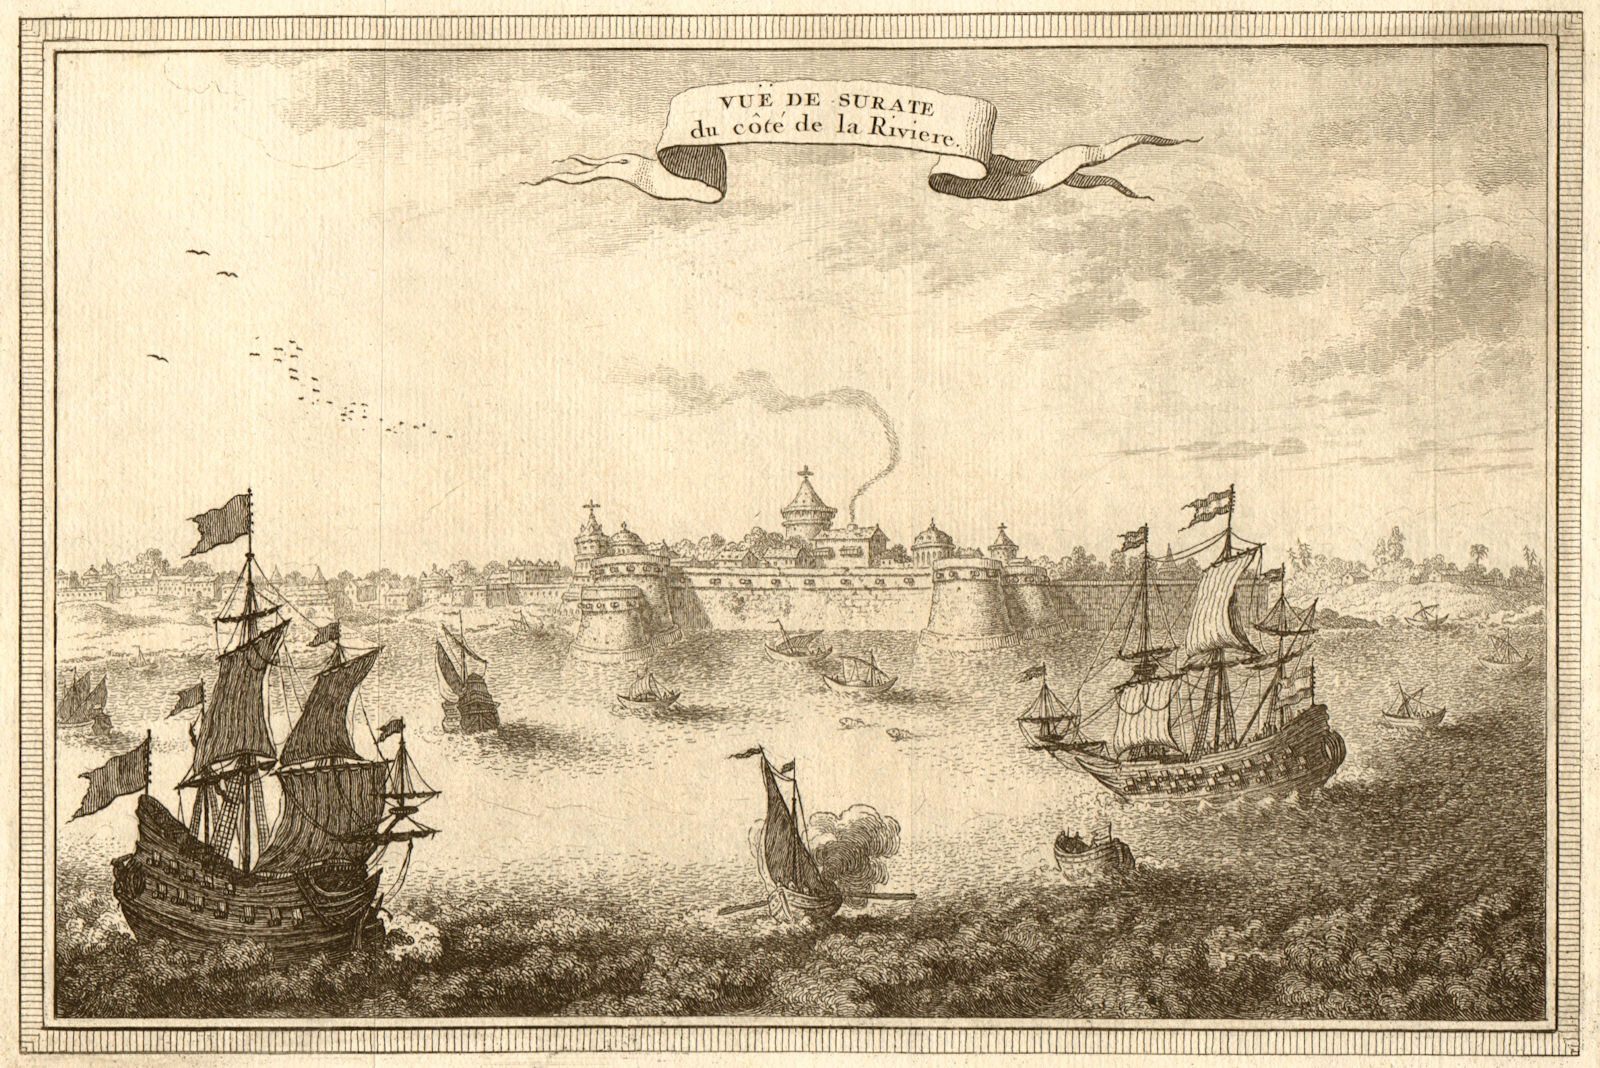 'Vue de Surate, du côté de la rivière'. View of Surat. Gujarat, India 1751